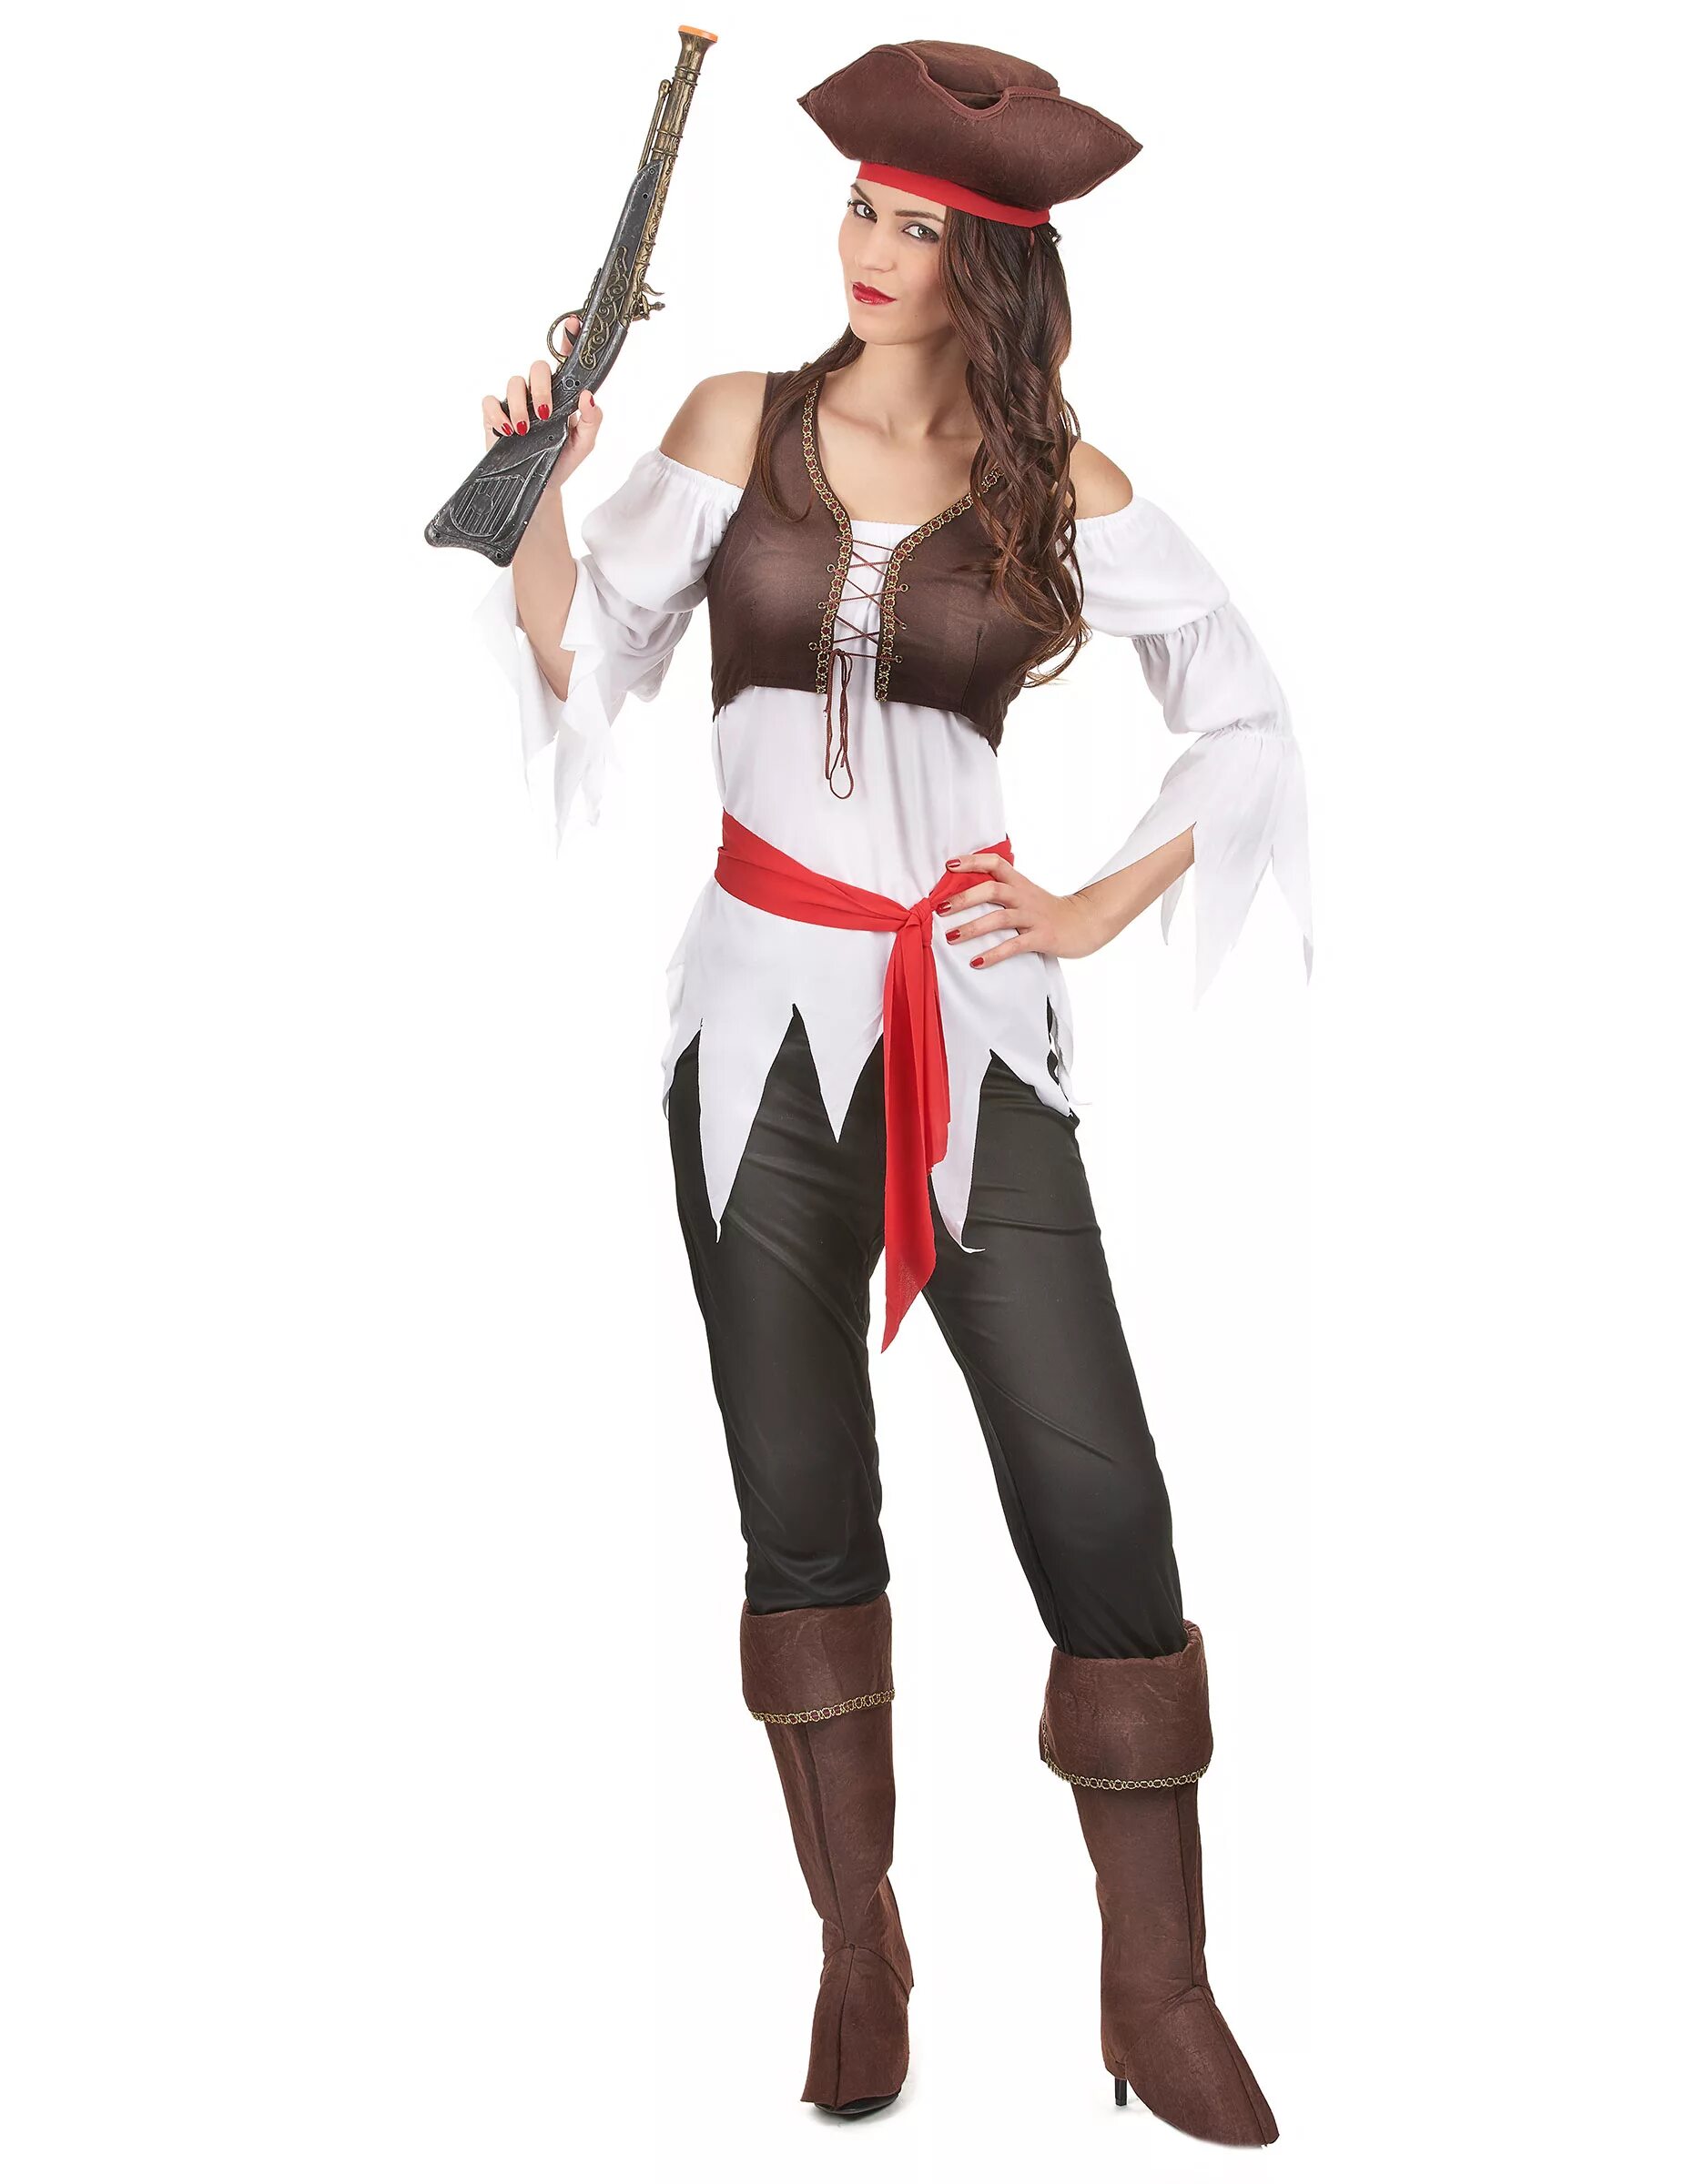 Женский костюм пирата. Костюм пирата для женщины. Пиратский костюм для девушки. Пиратский образ для девушки.